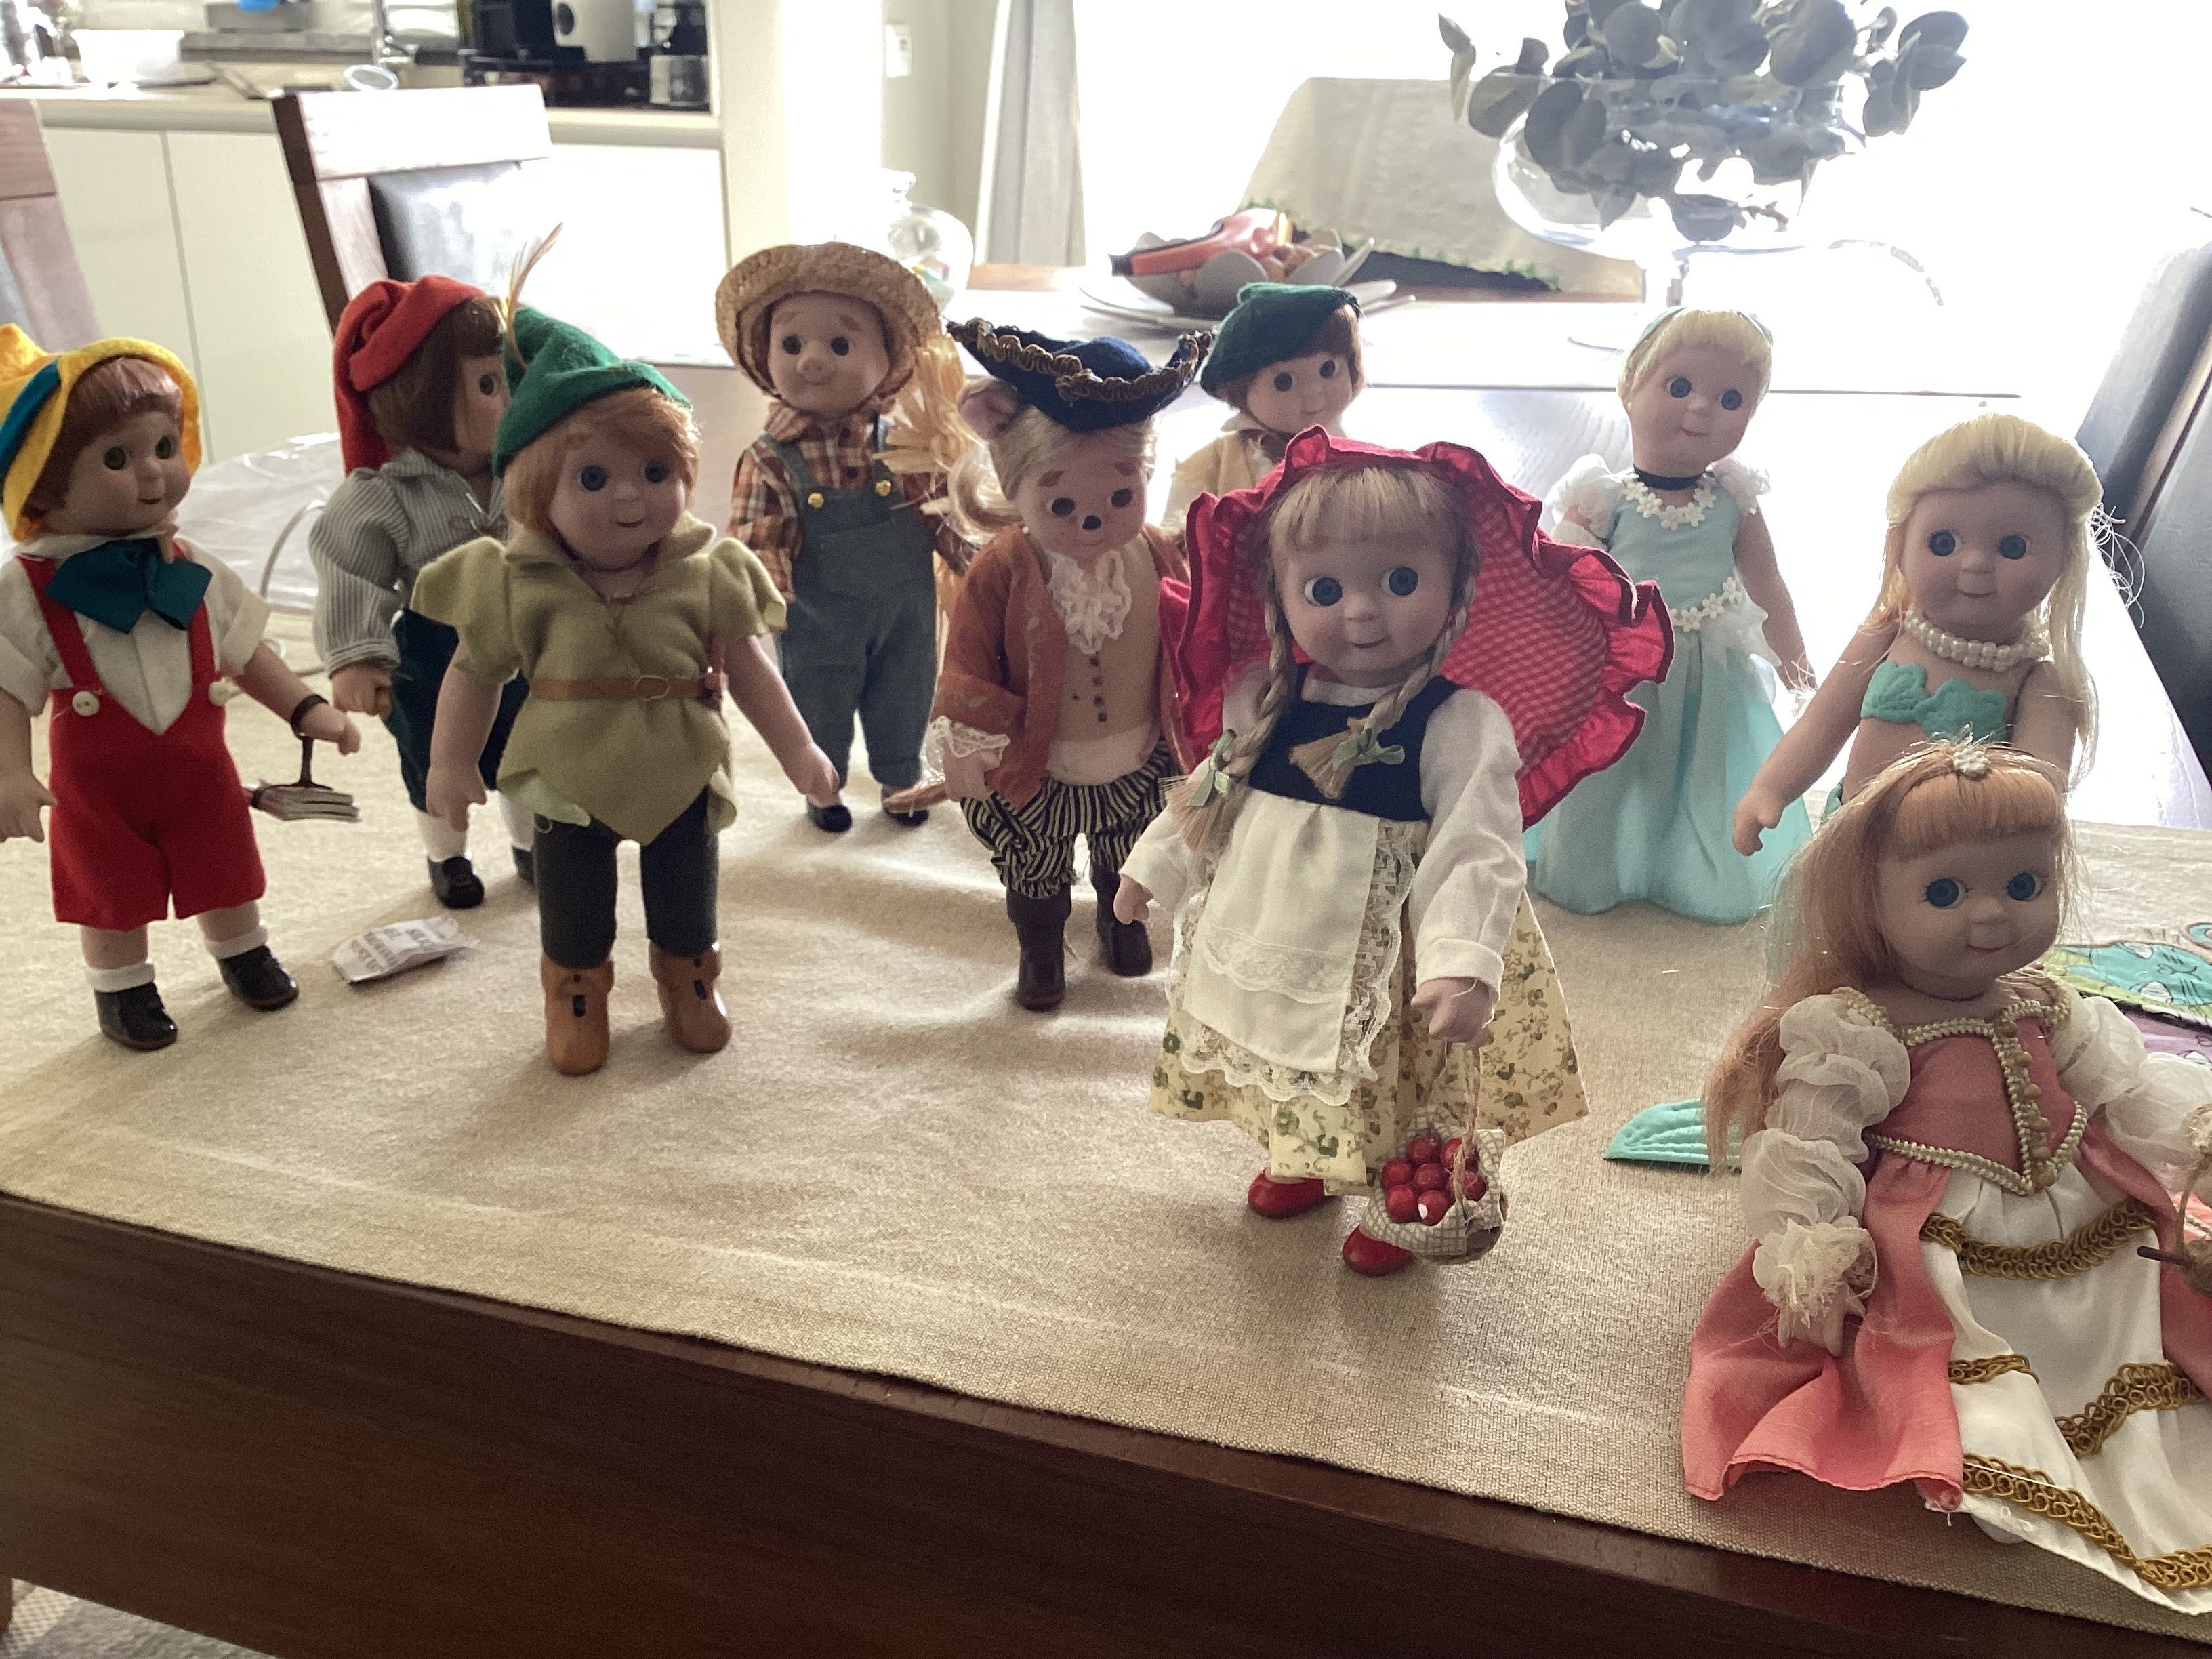 Coleção bonecas porcelana, alusiva a histórias infantis